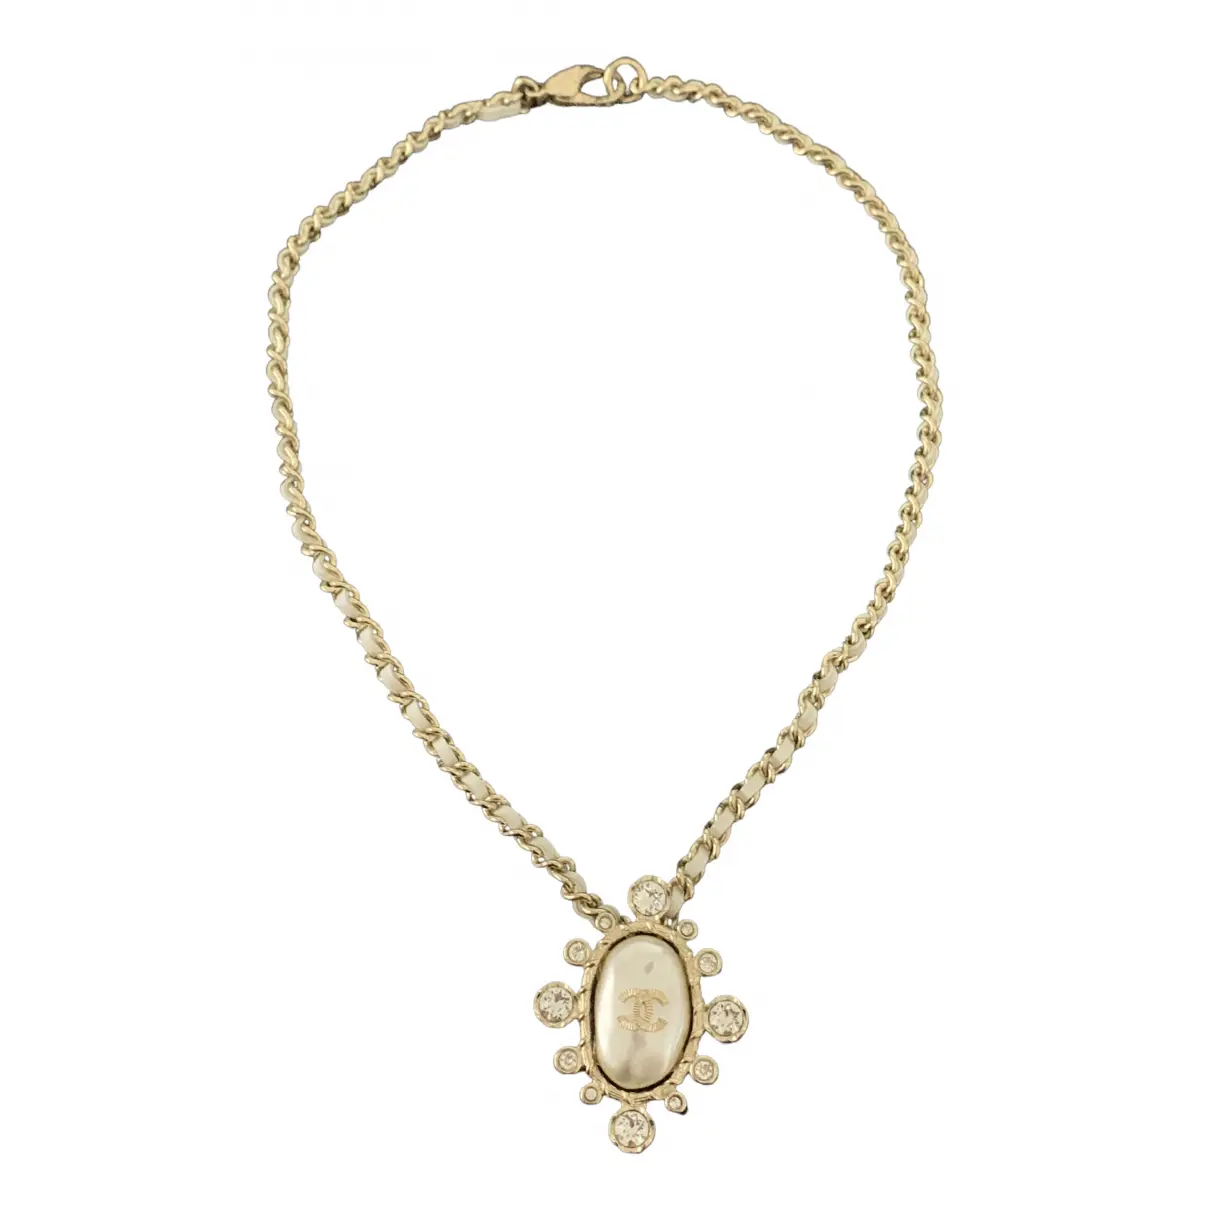 Baroque necklace Chanel